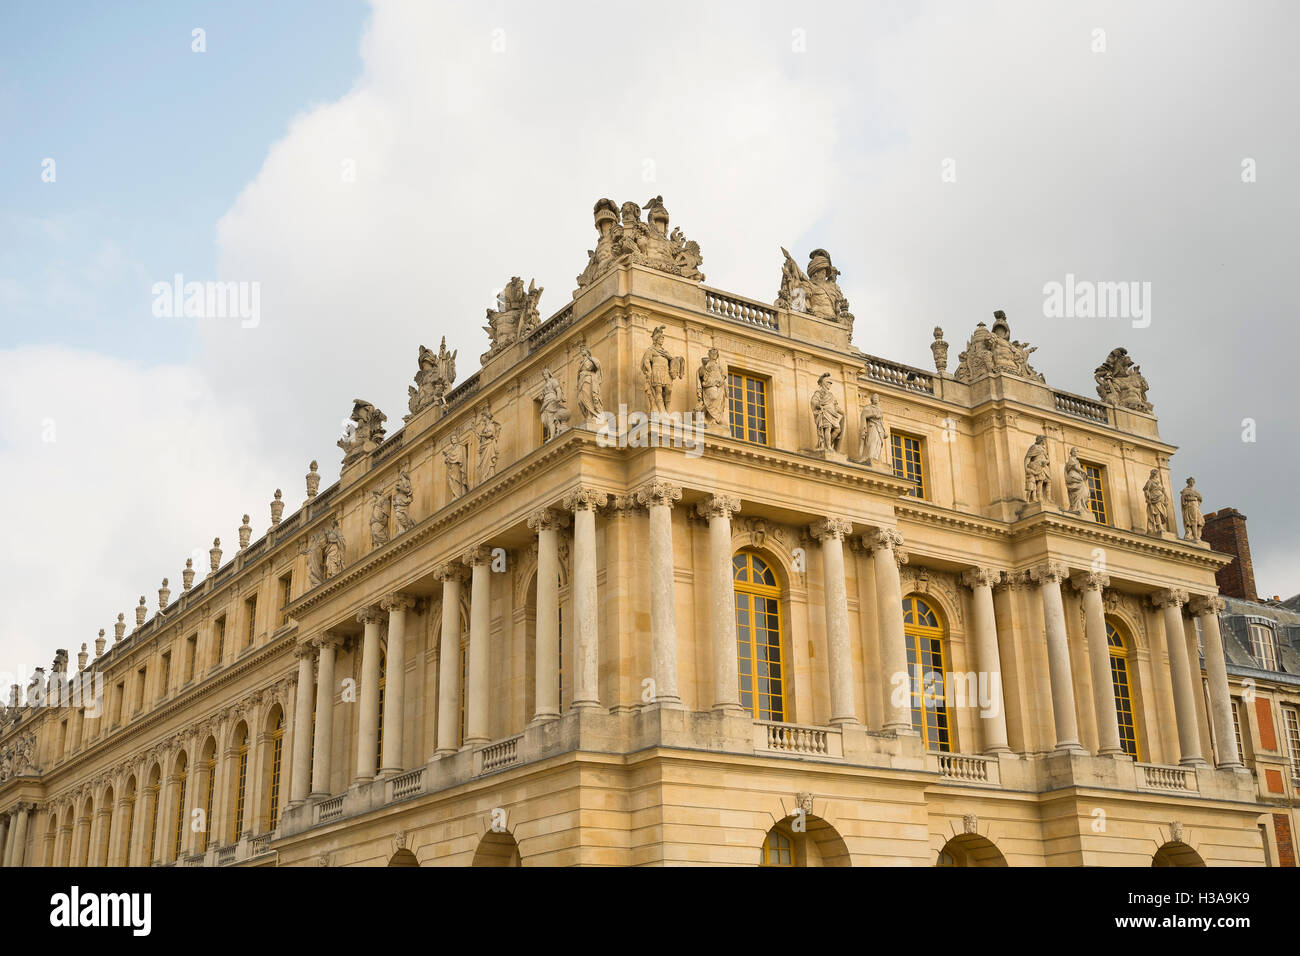 Château de Versailles in Paris France Stock Photo